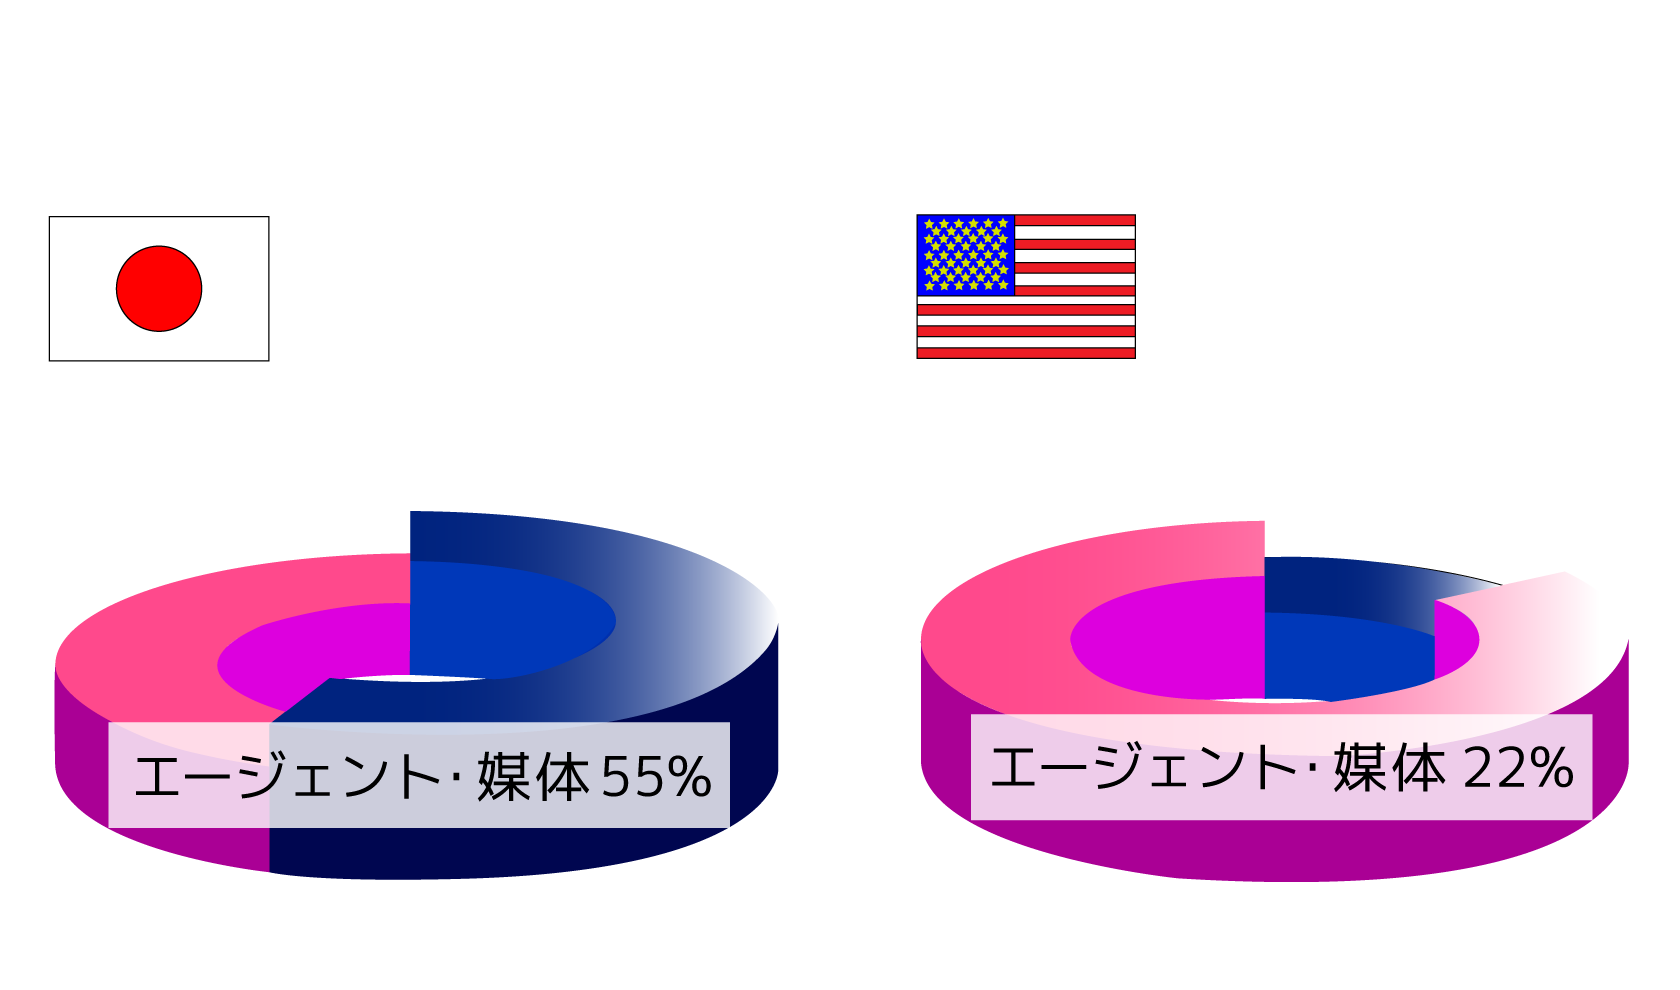 日本 エージェント・媒体 55%、アメリカ エージェント・媒体 23%